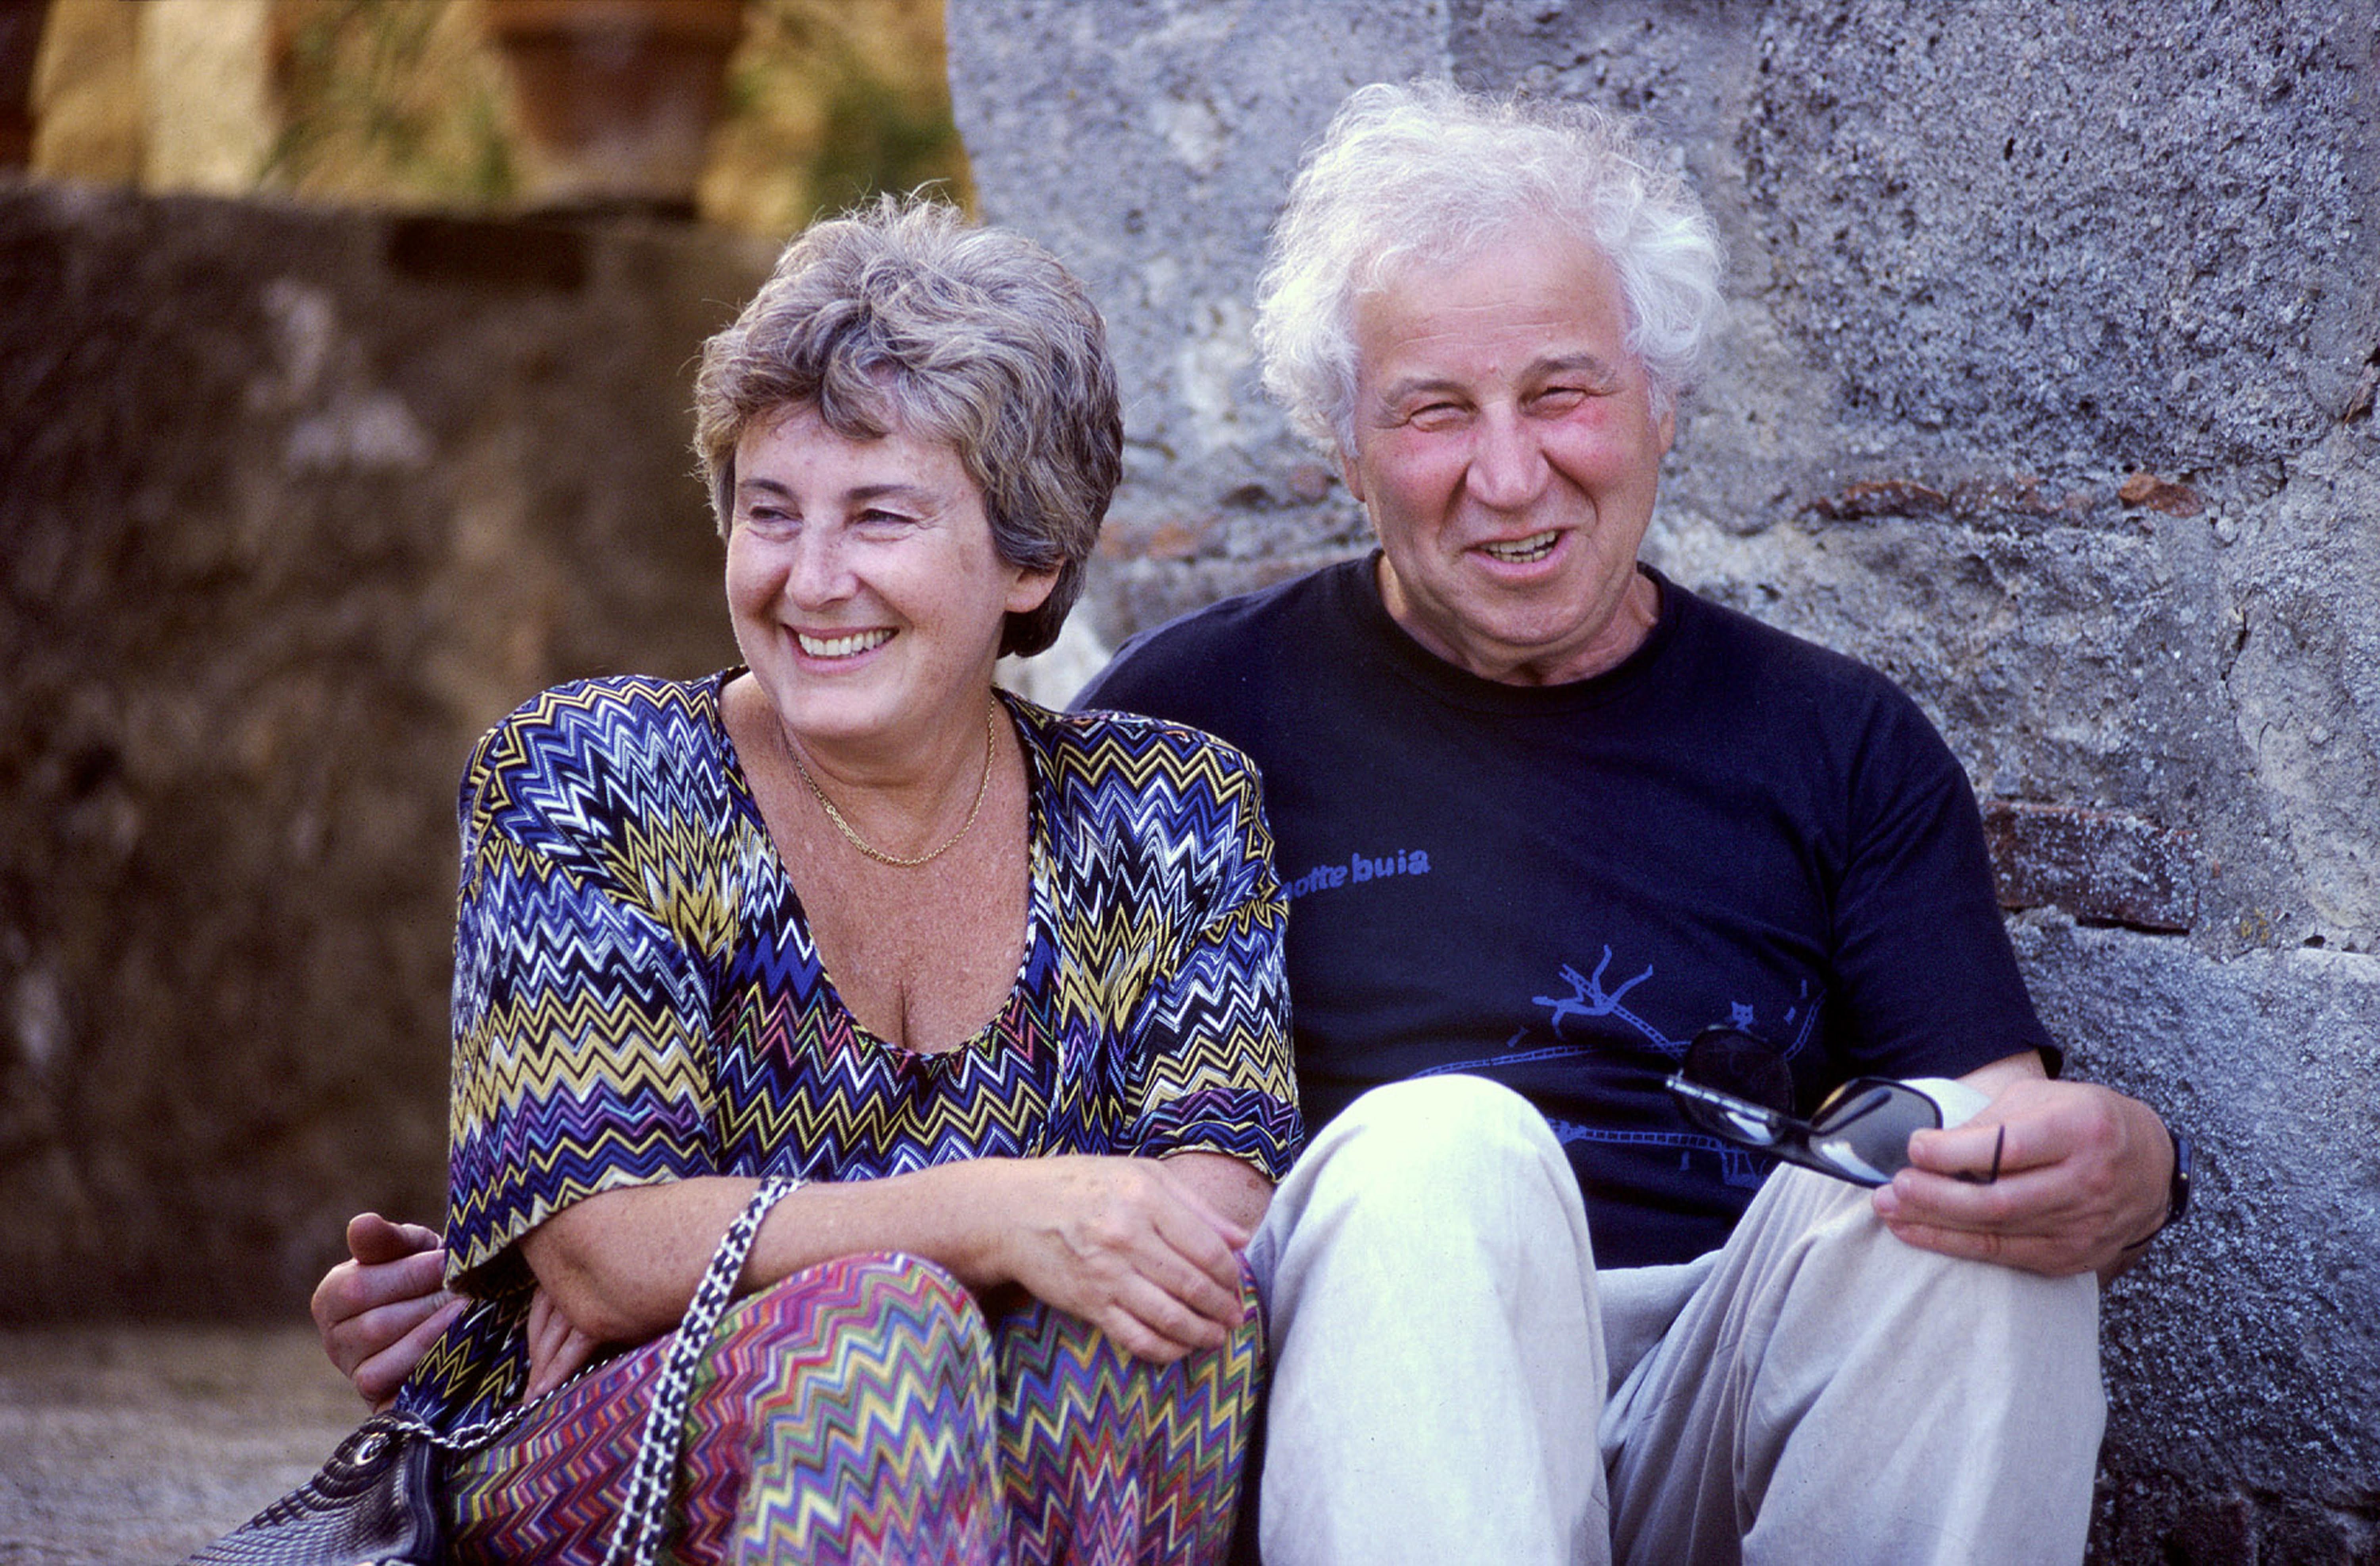 Photograph of Ilya and Emilia Kabakov